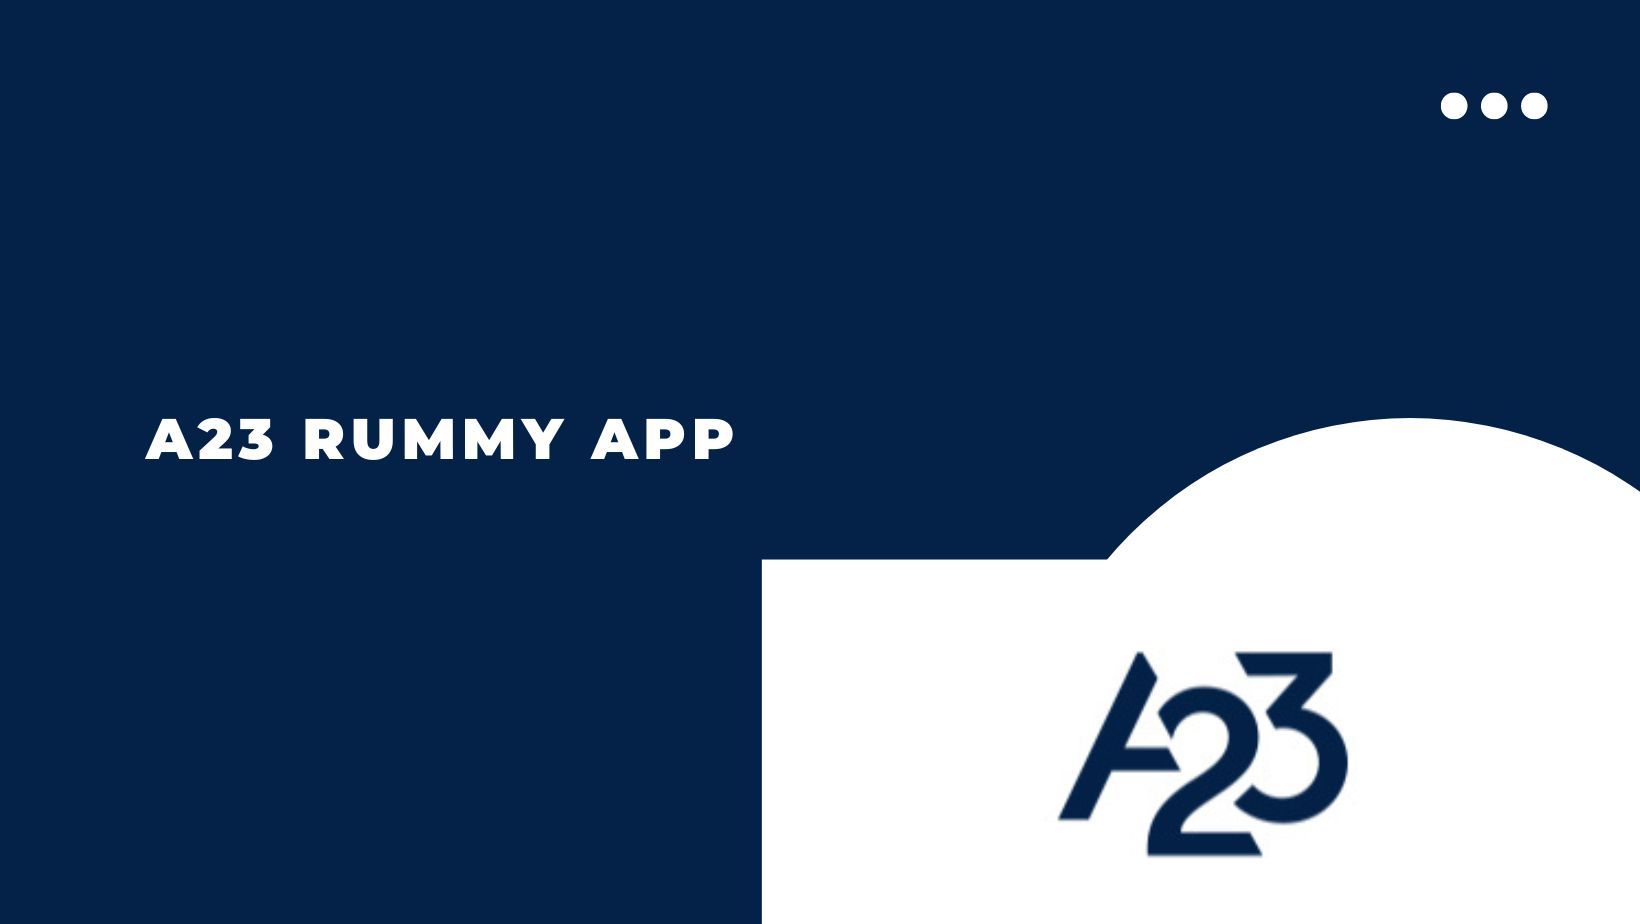 A23 rummy app